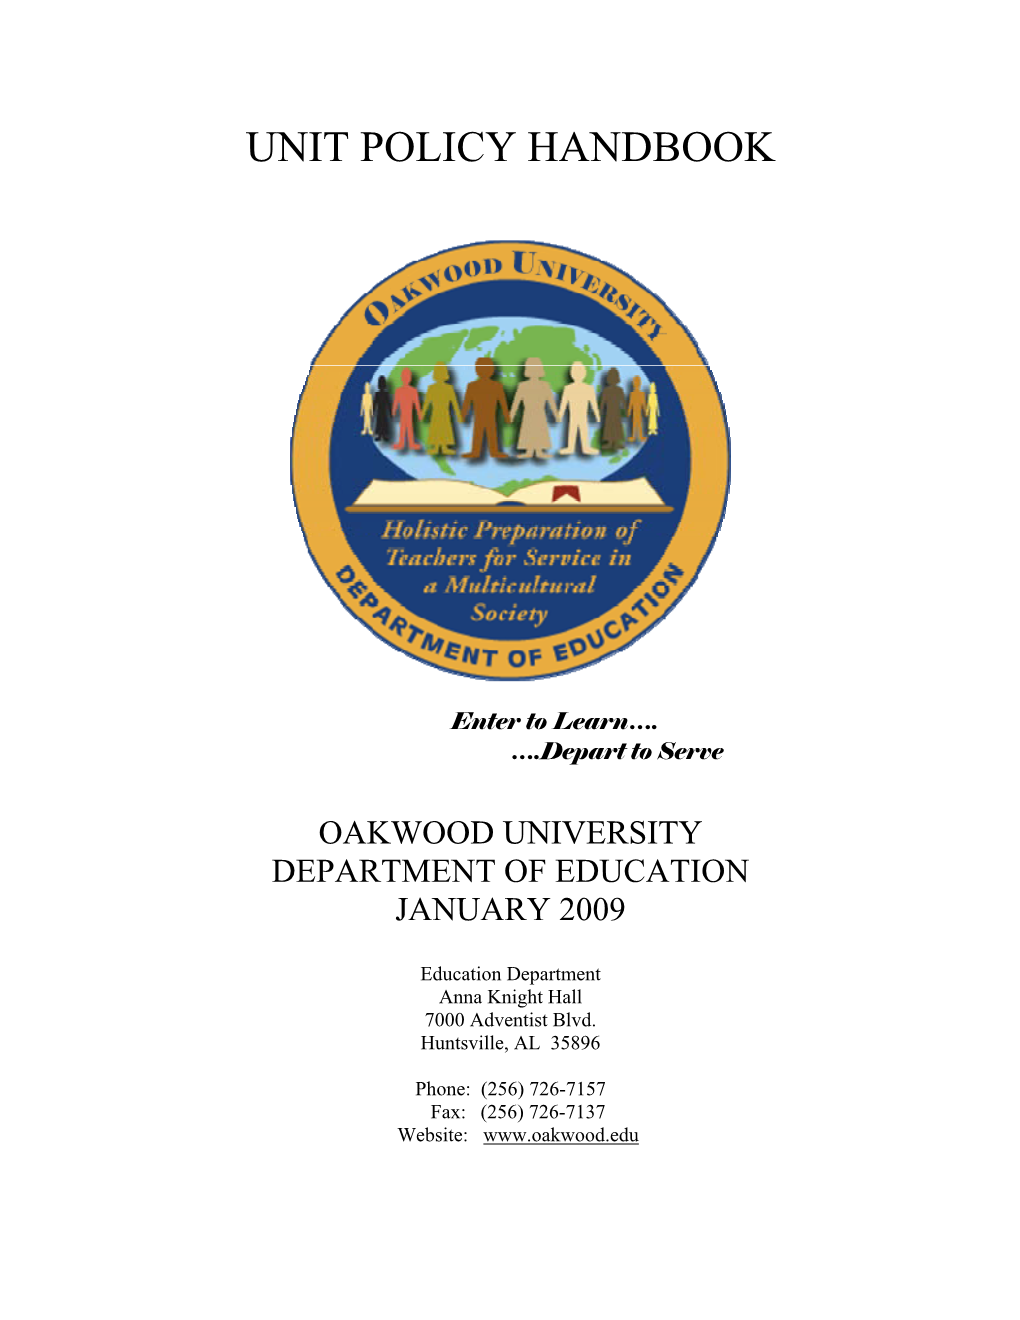 Unit Policy Handbook